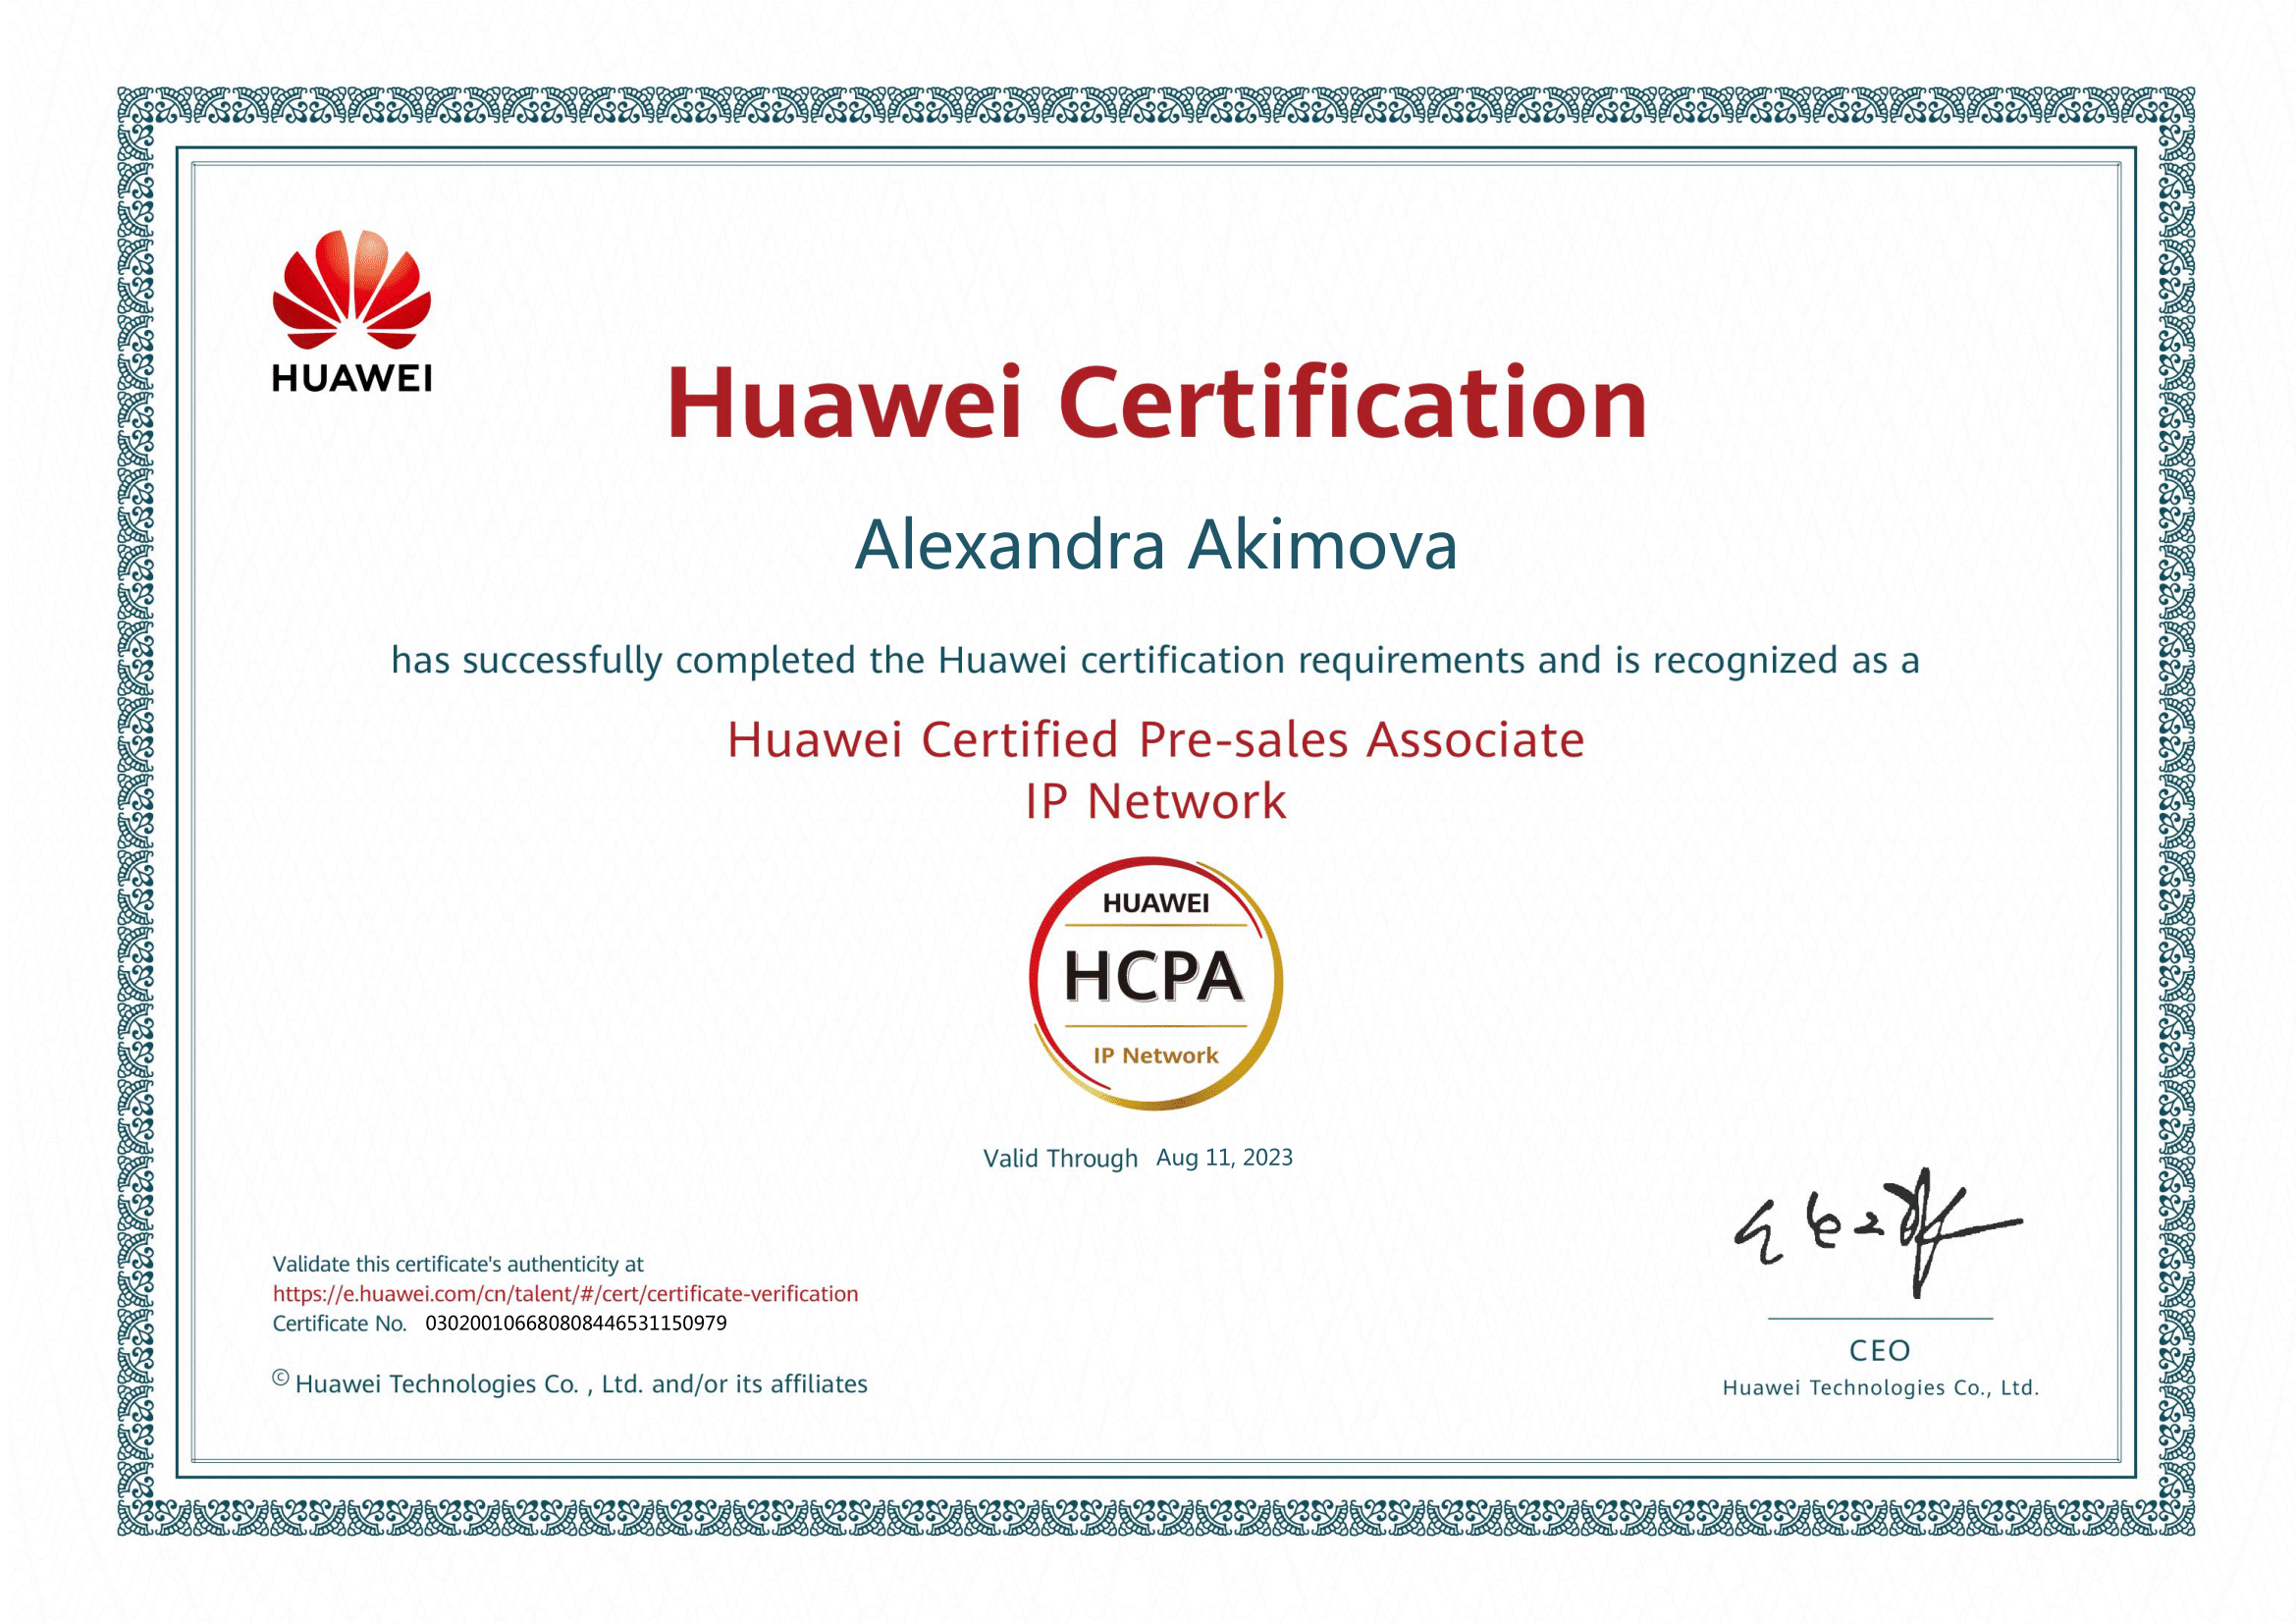 Компания Линкас – авторизованный партнер Huawei